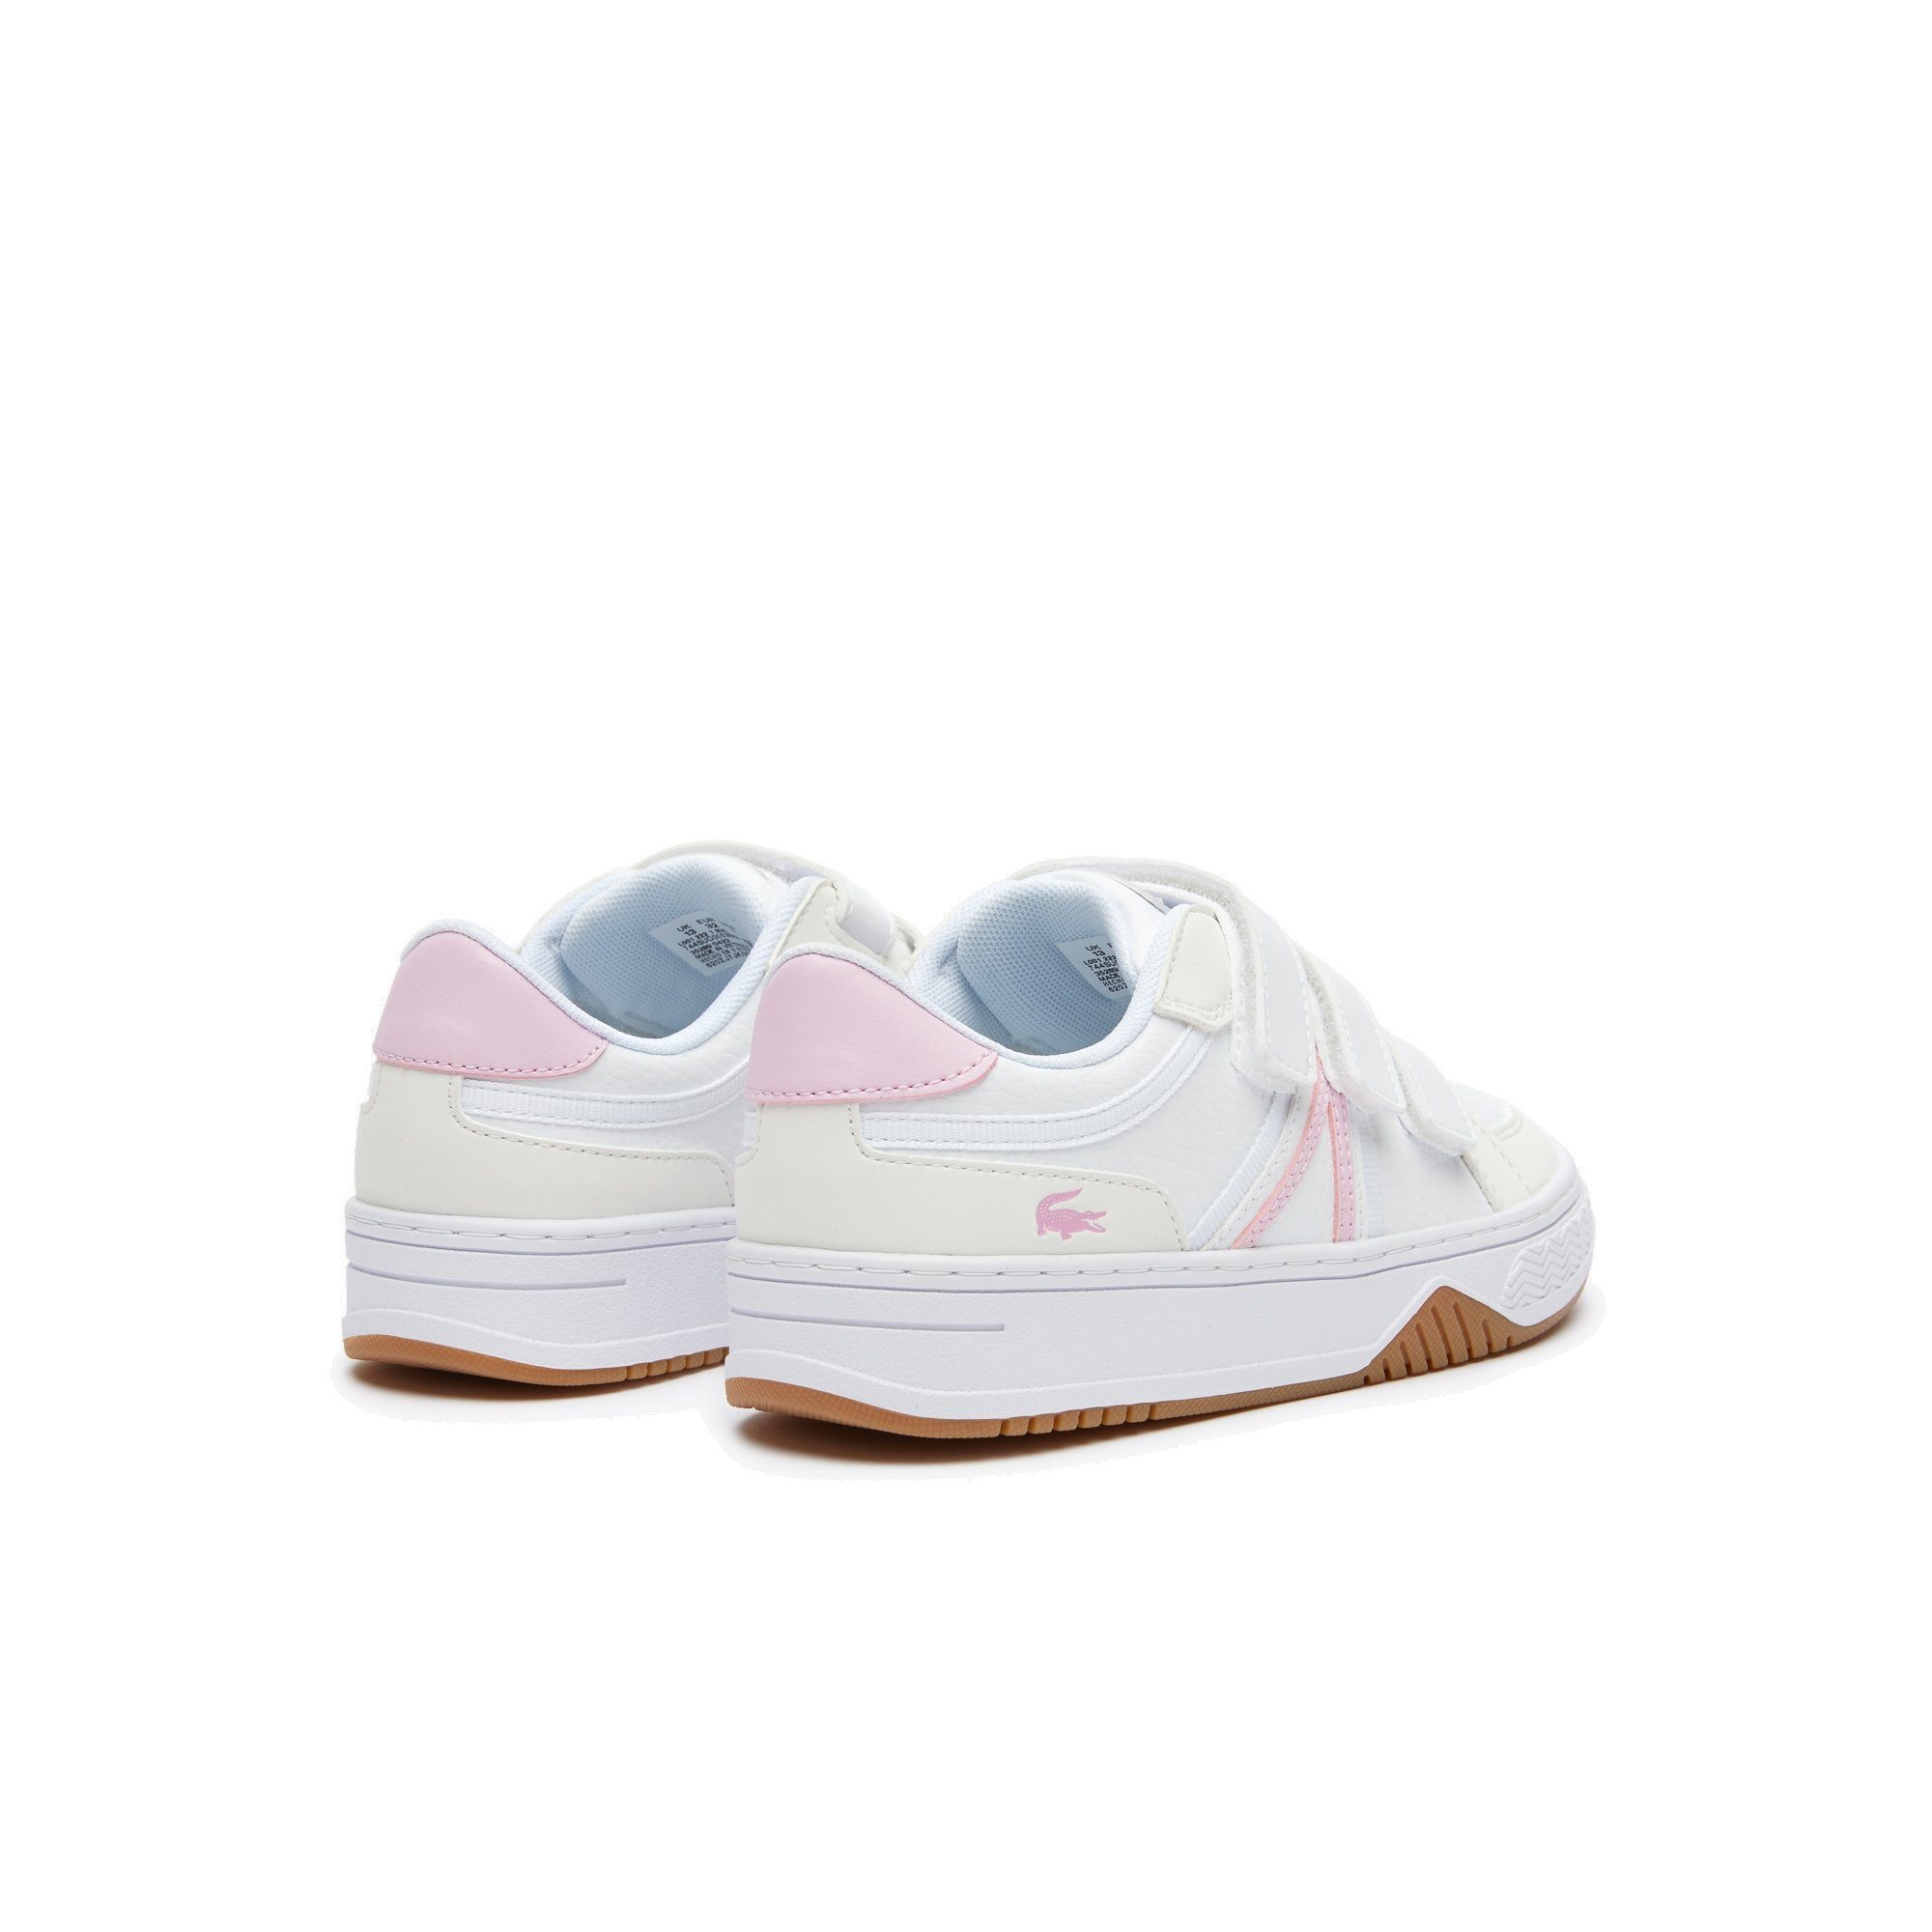 WEISS/ROSA Lacoste Sneaker (B53)